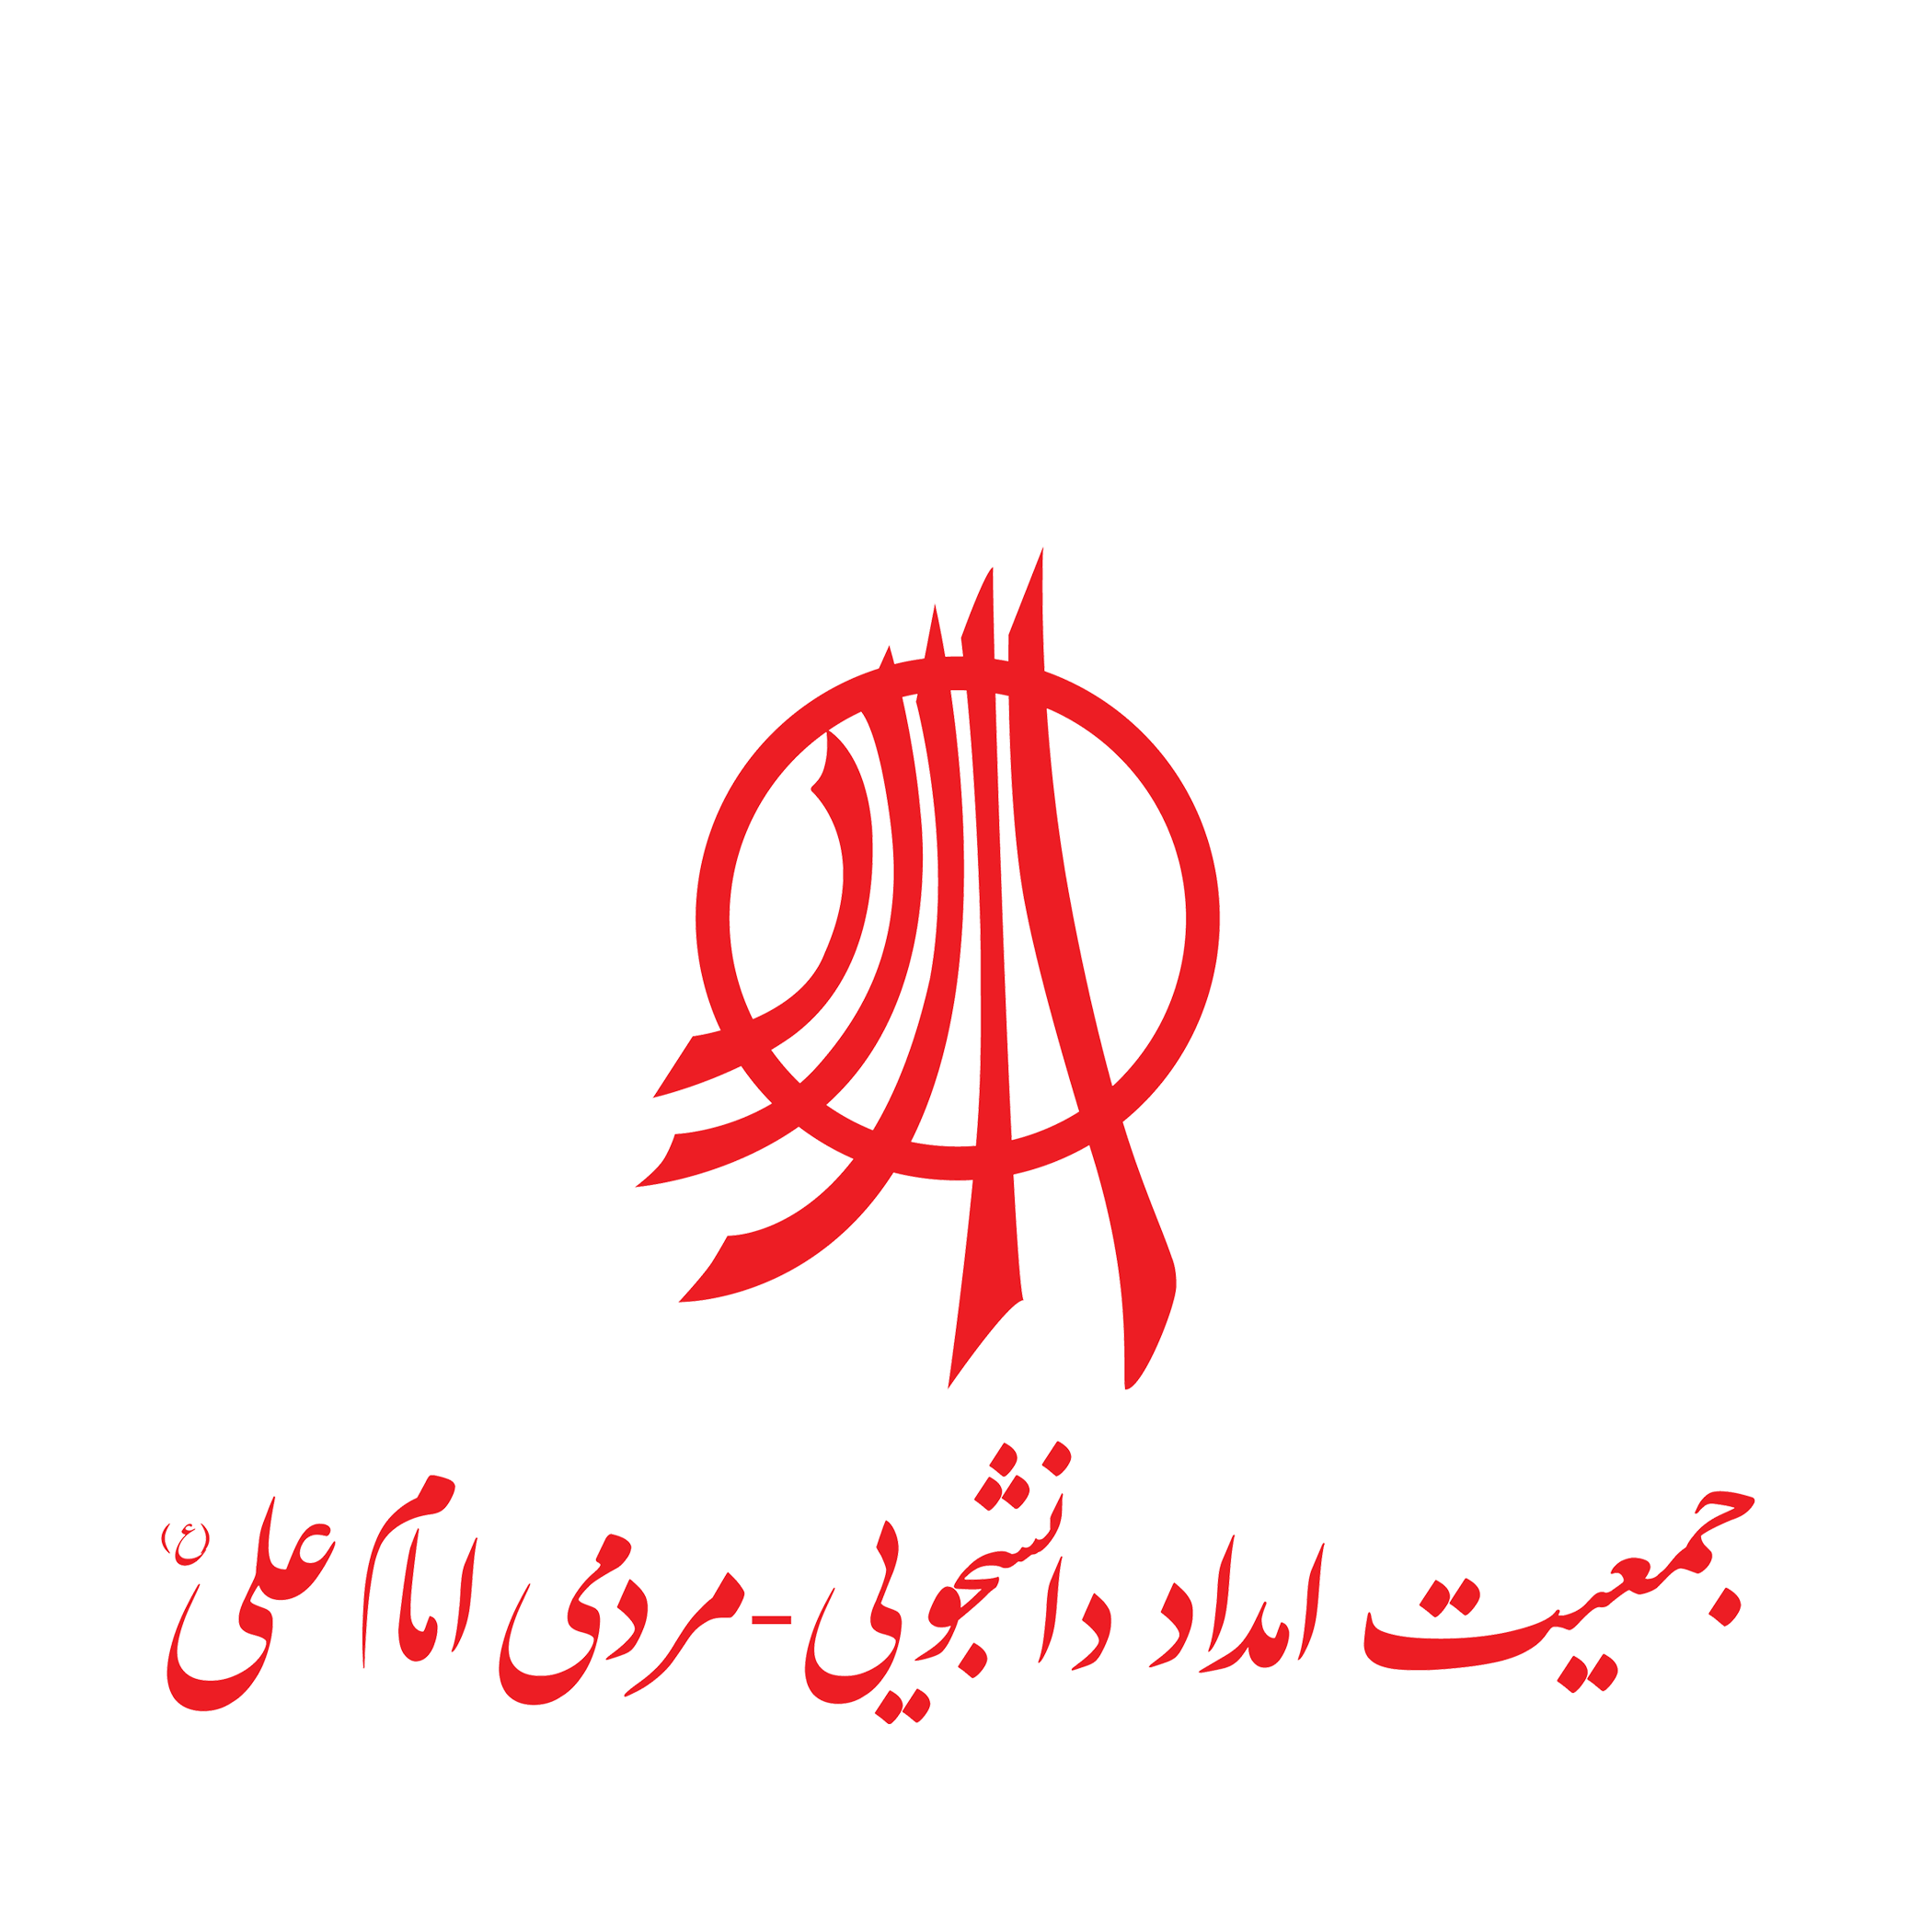 لوگوی جمعیت امداد دانشجویی – مردمی امام علی(ع) یک سازمان مردم نهاد، کاملا مستقل، غیرسیاسی و غیردولتی